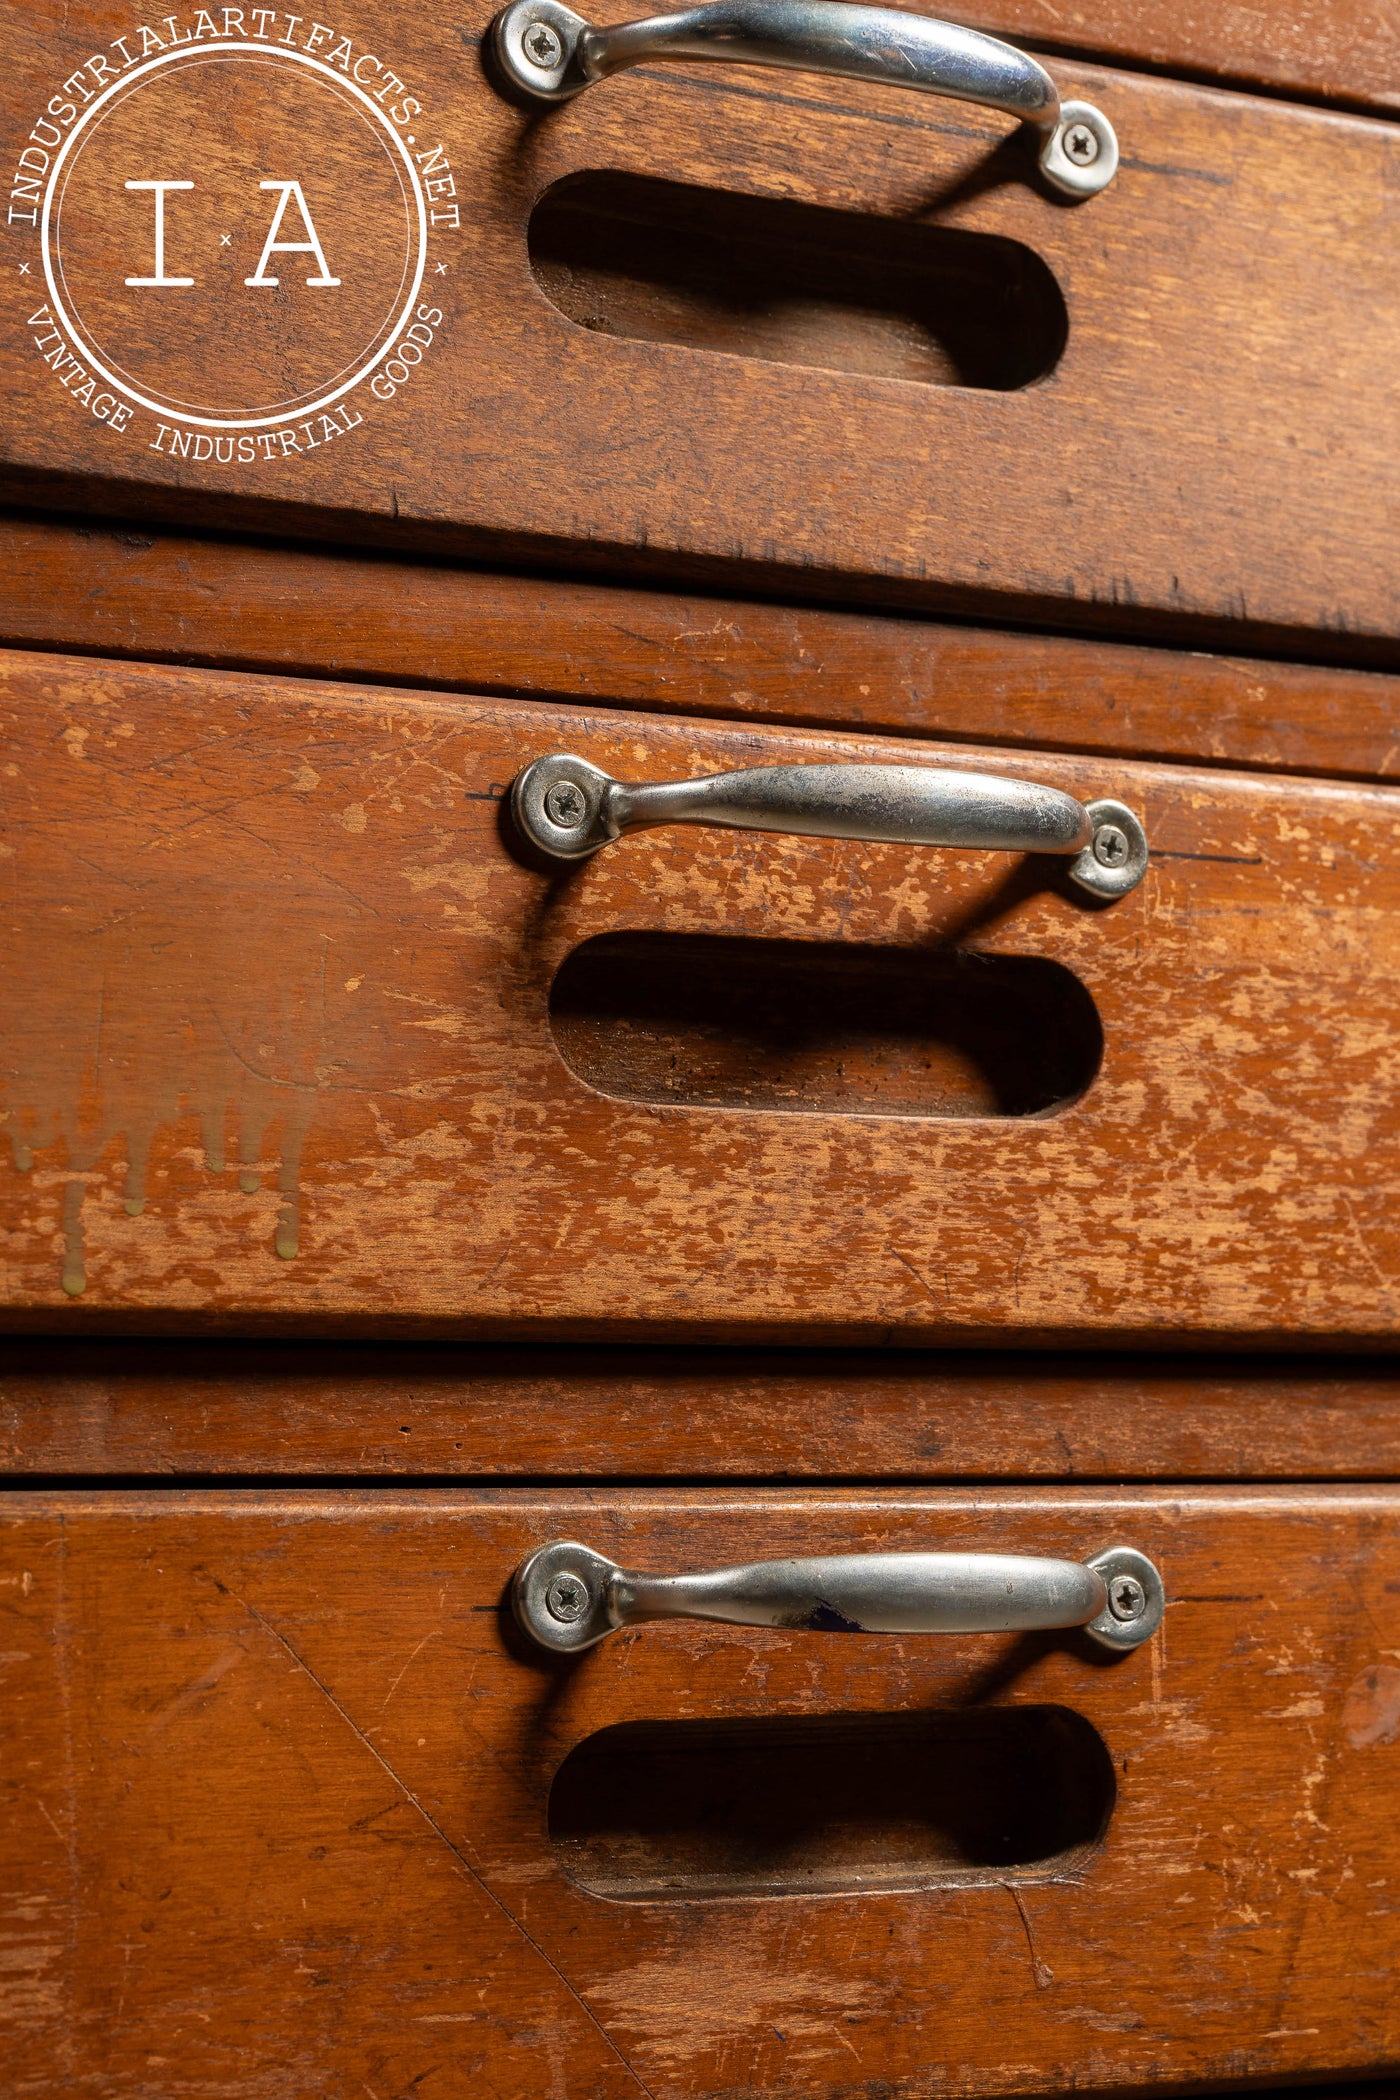 Vintage Wooden Lab Cabinet